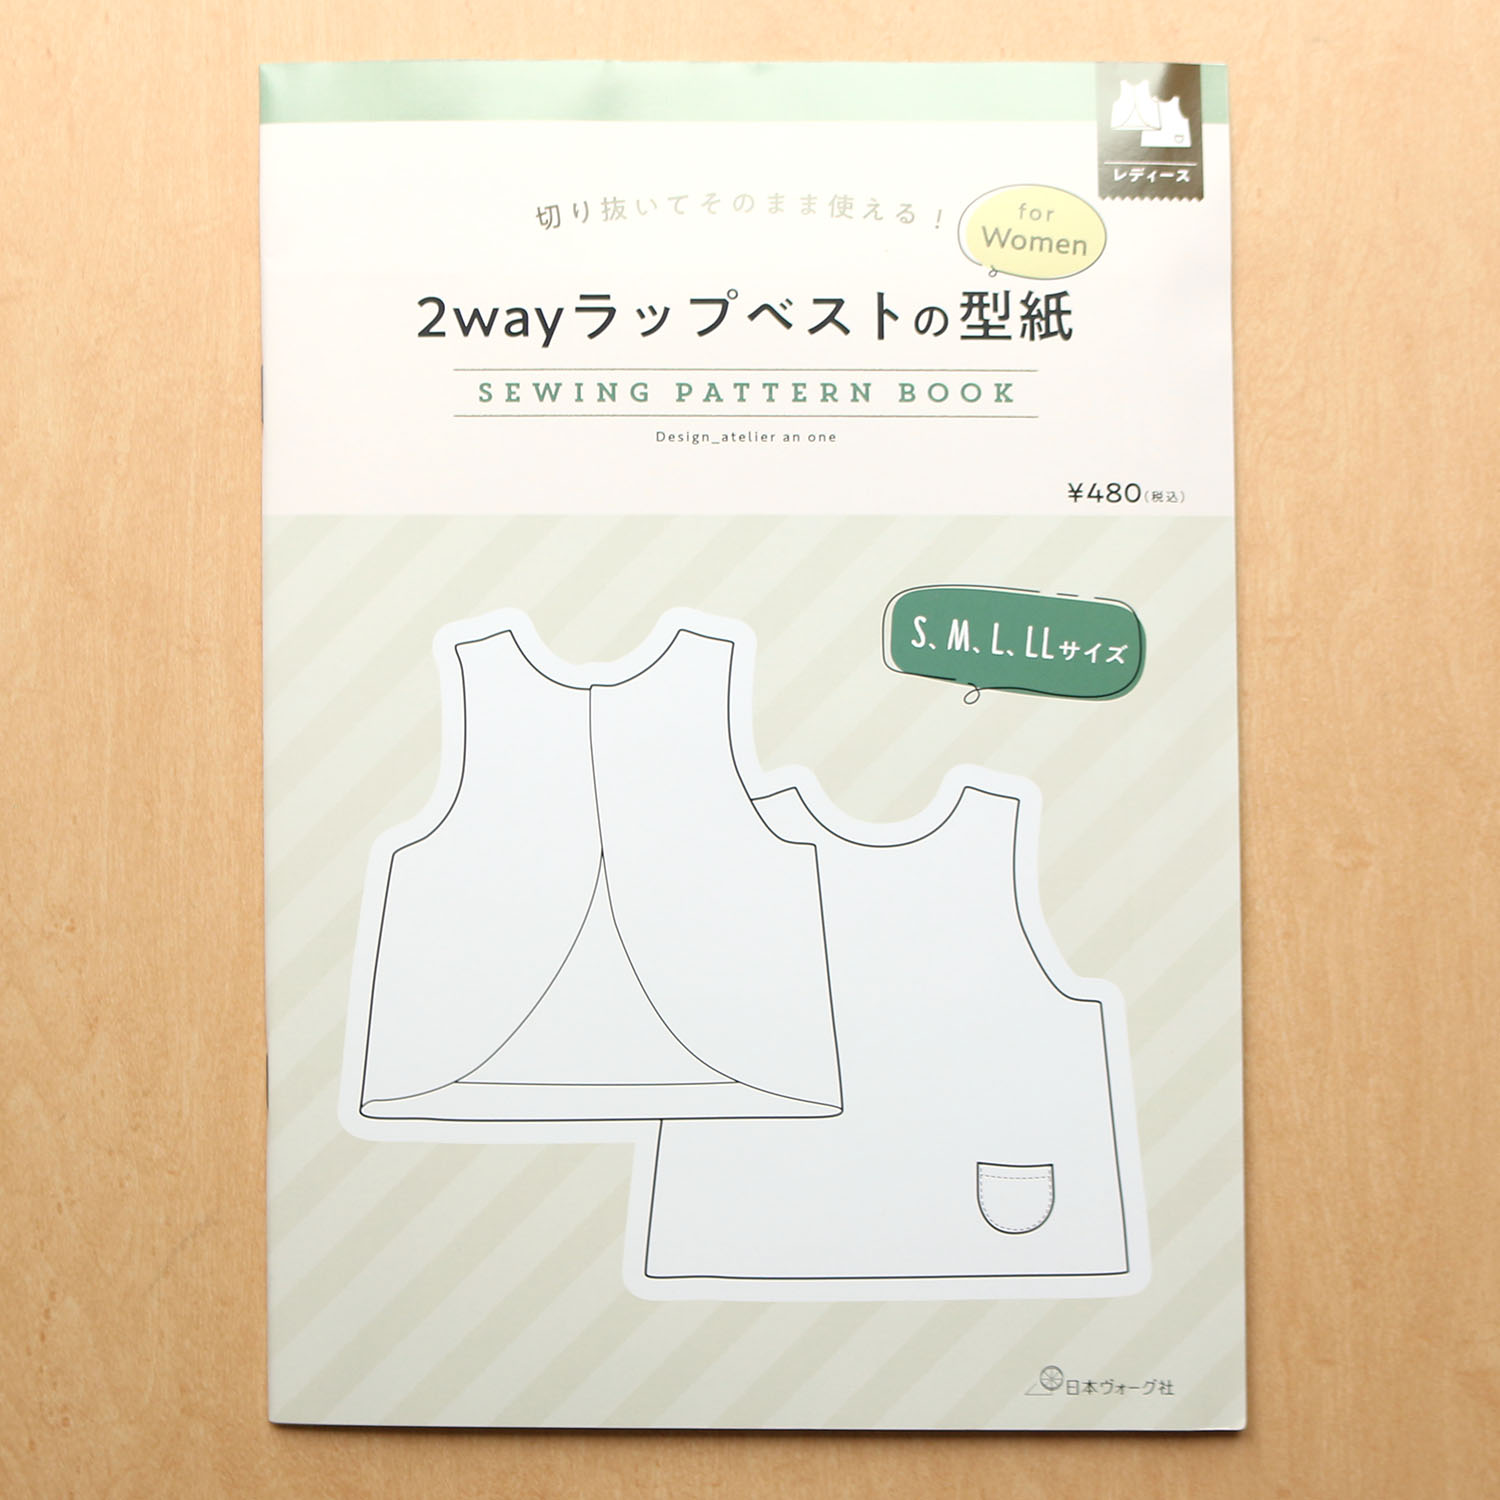 【お取り寄せ・返品不可】NV22059 2wayラップベストの型紙 for Women SEWING PATTERN BOOK/日本ヴォーグ社 (冊)